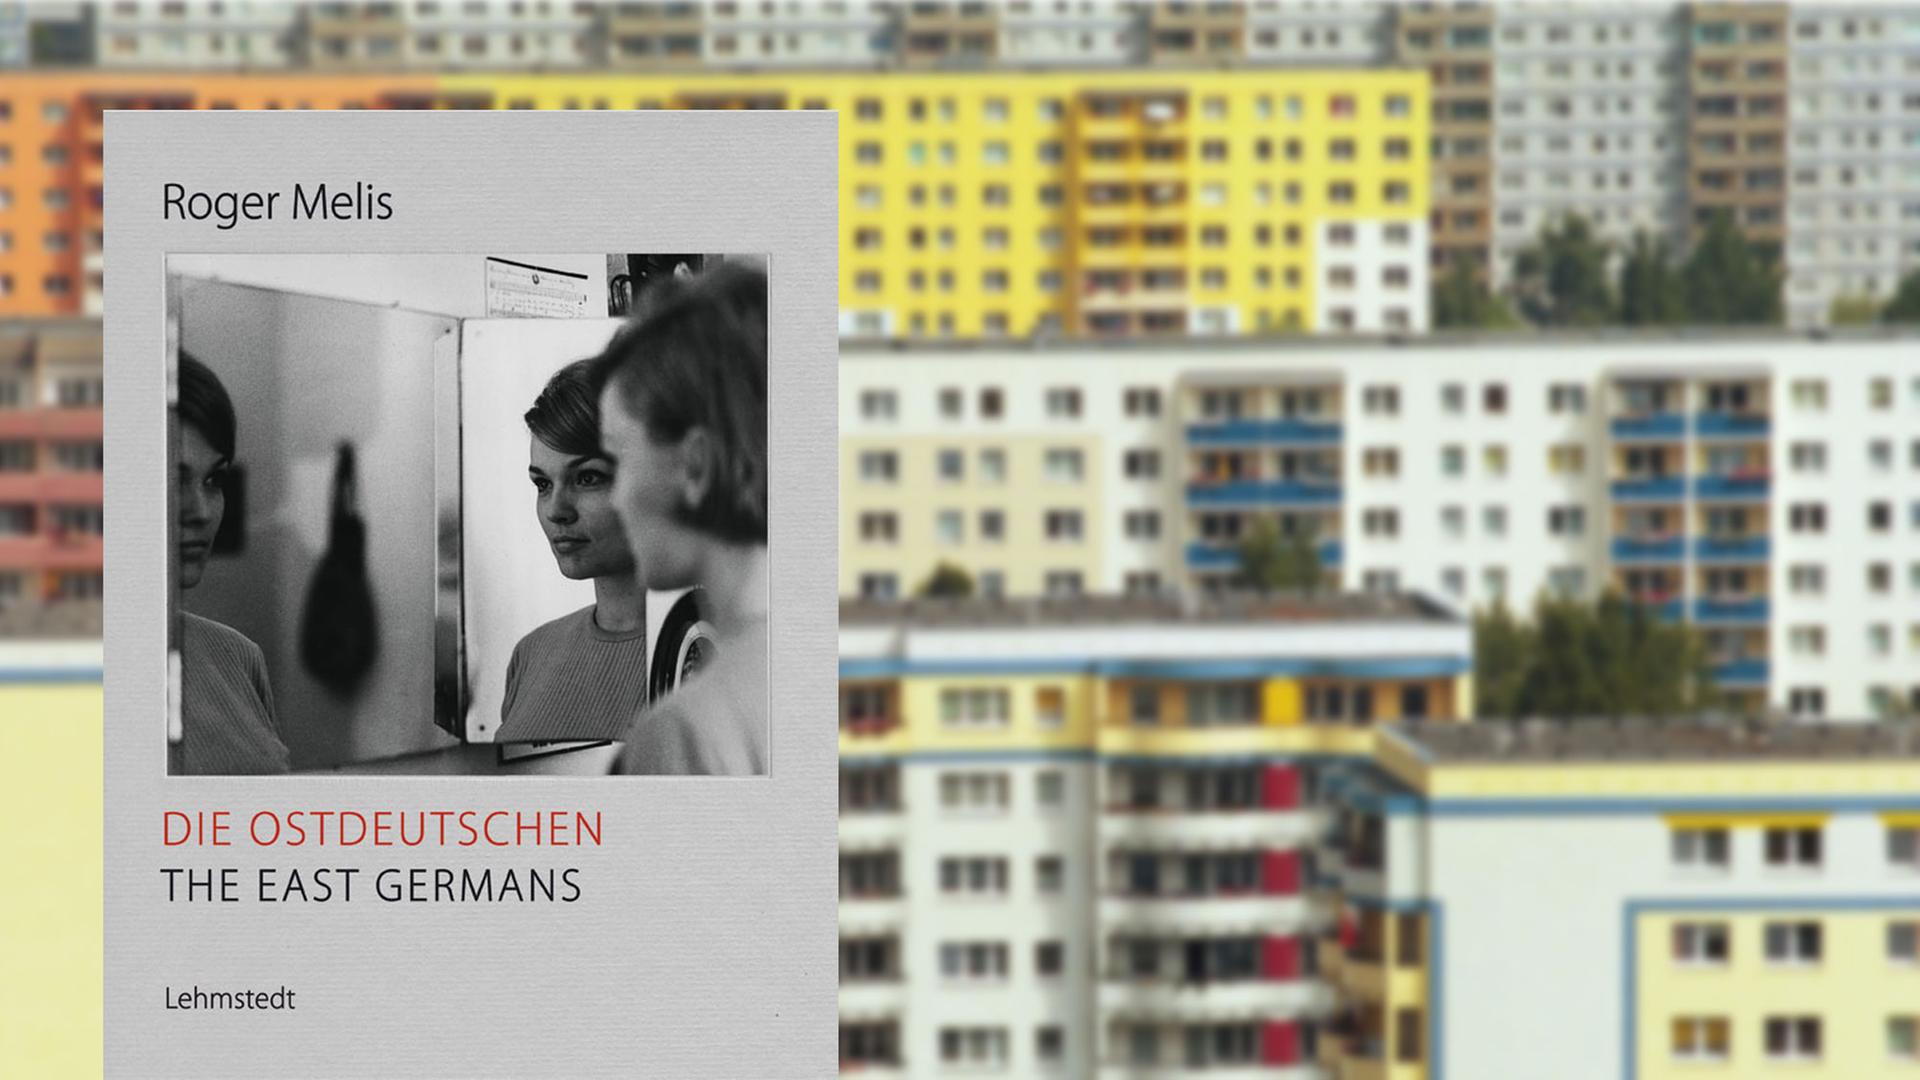 Cover des Bildbands "Robert Melis: Die Ostdeutschen", im Hintergrund Plattenbauten in Ost-Berlin